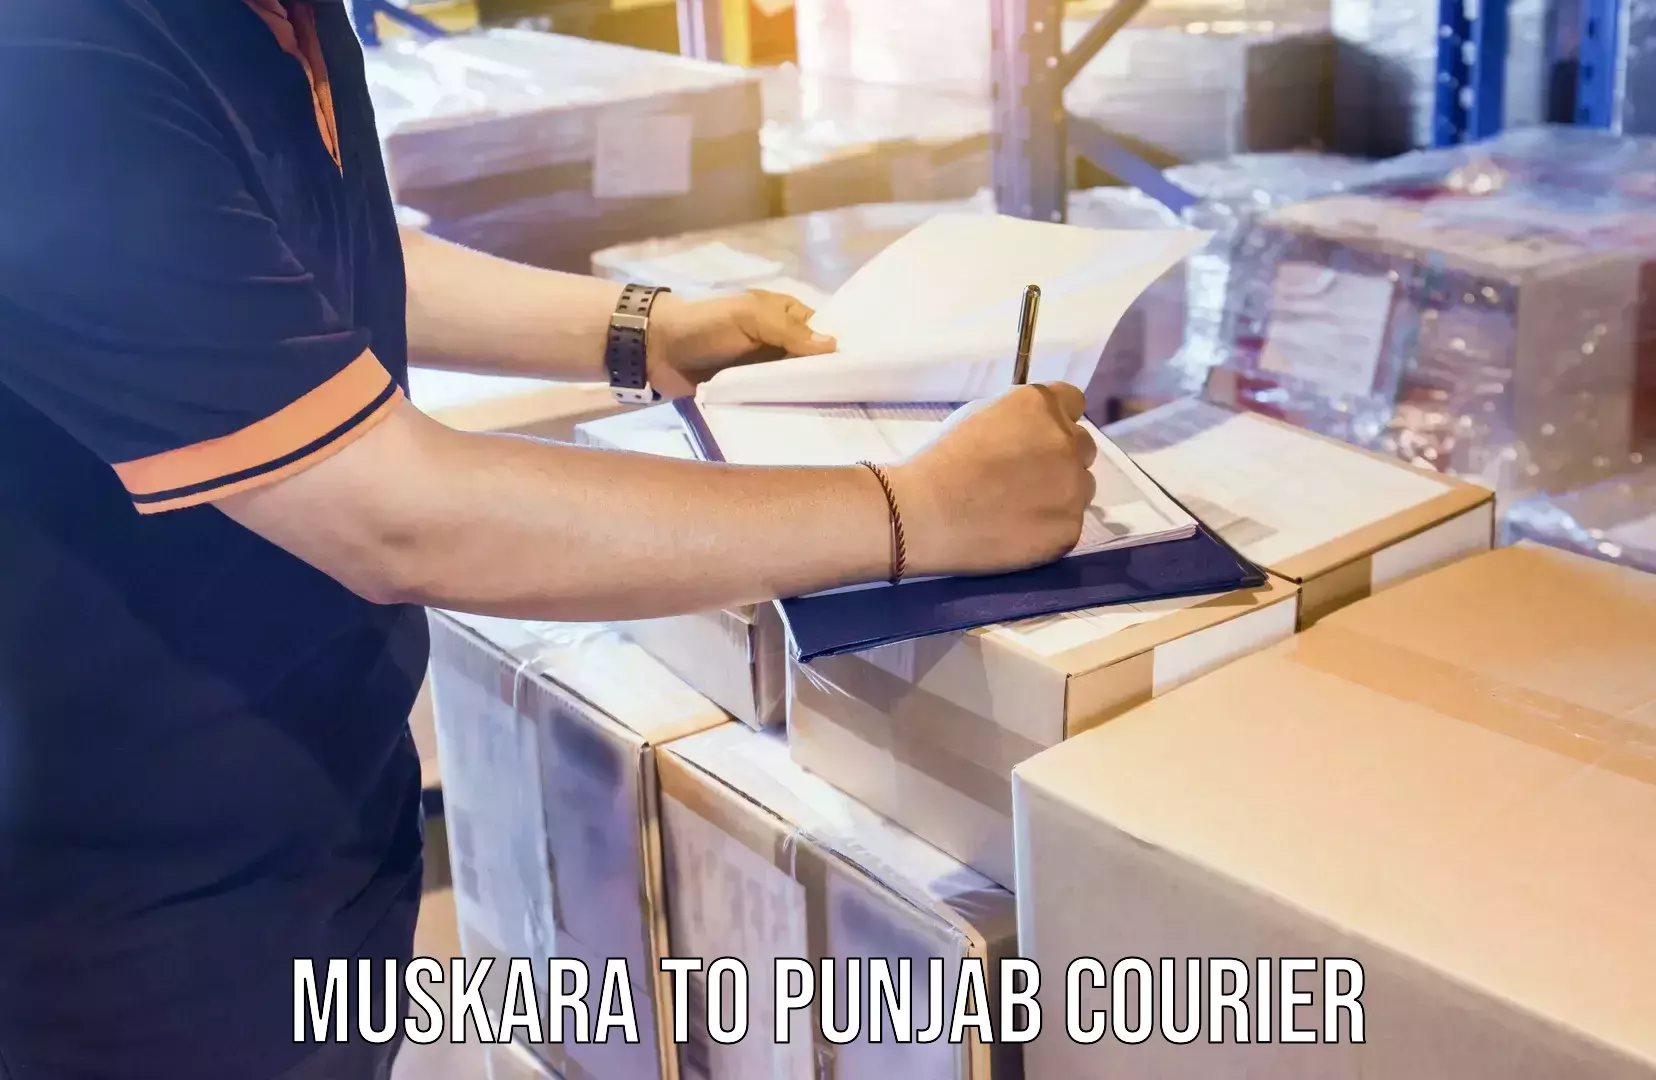 Nationwide furniture movers Muskara to Punjab